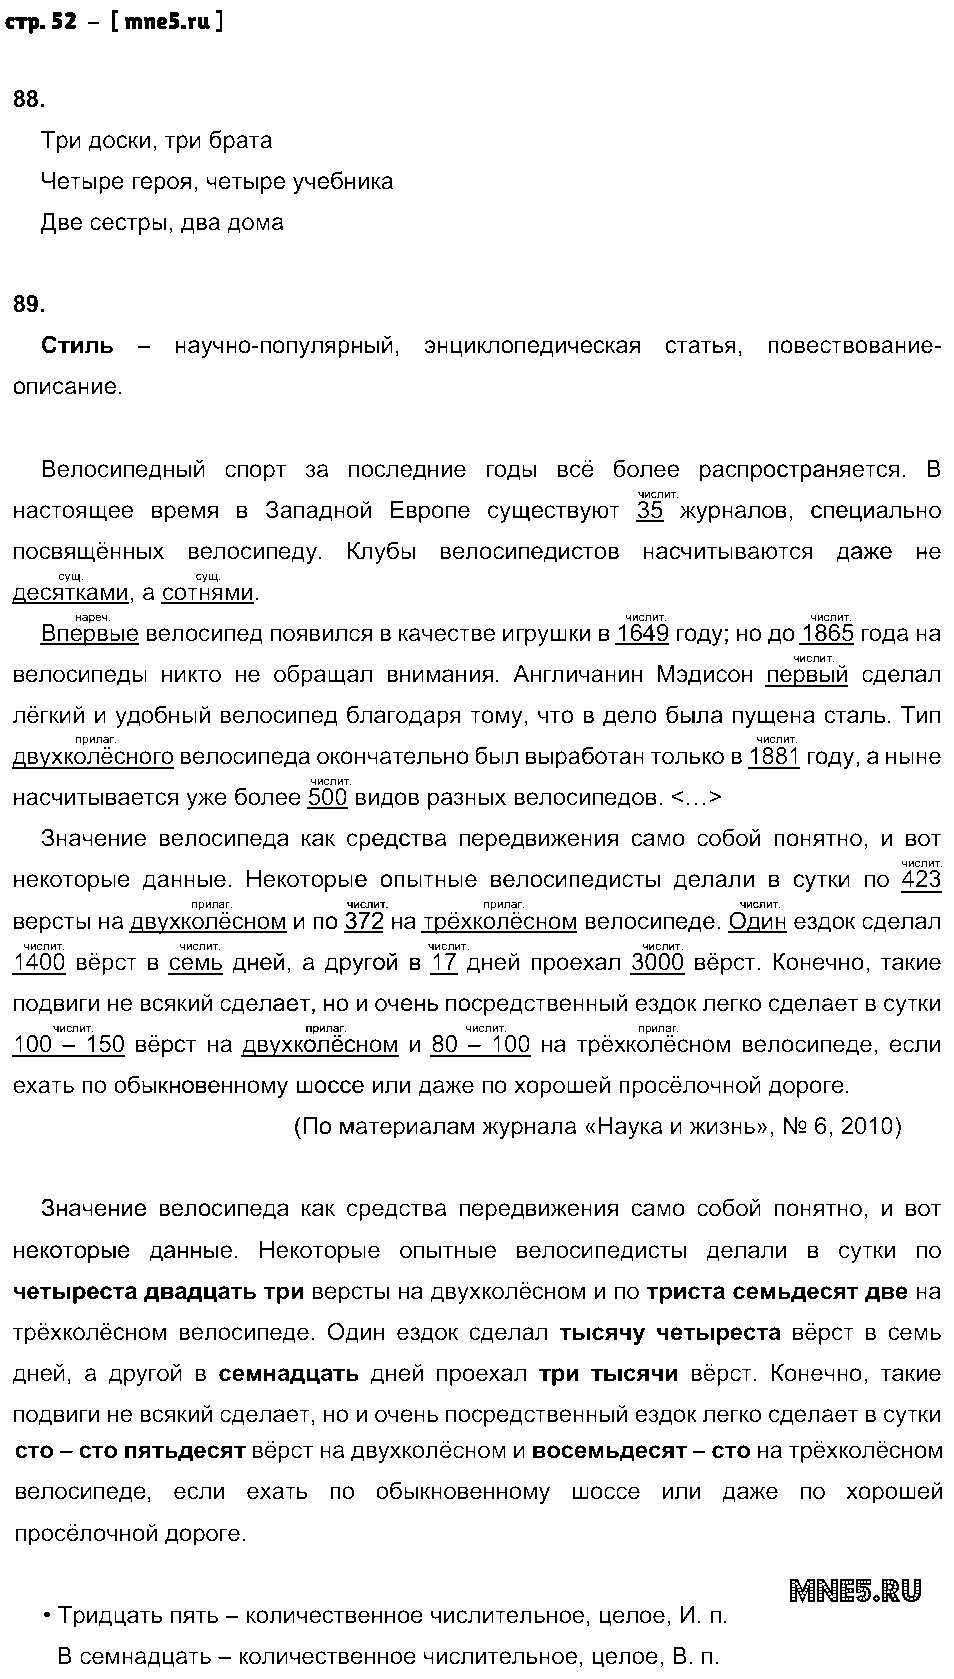 ГДЗ Русский язык 6 класс - стр. 52